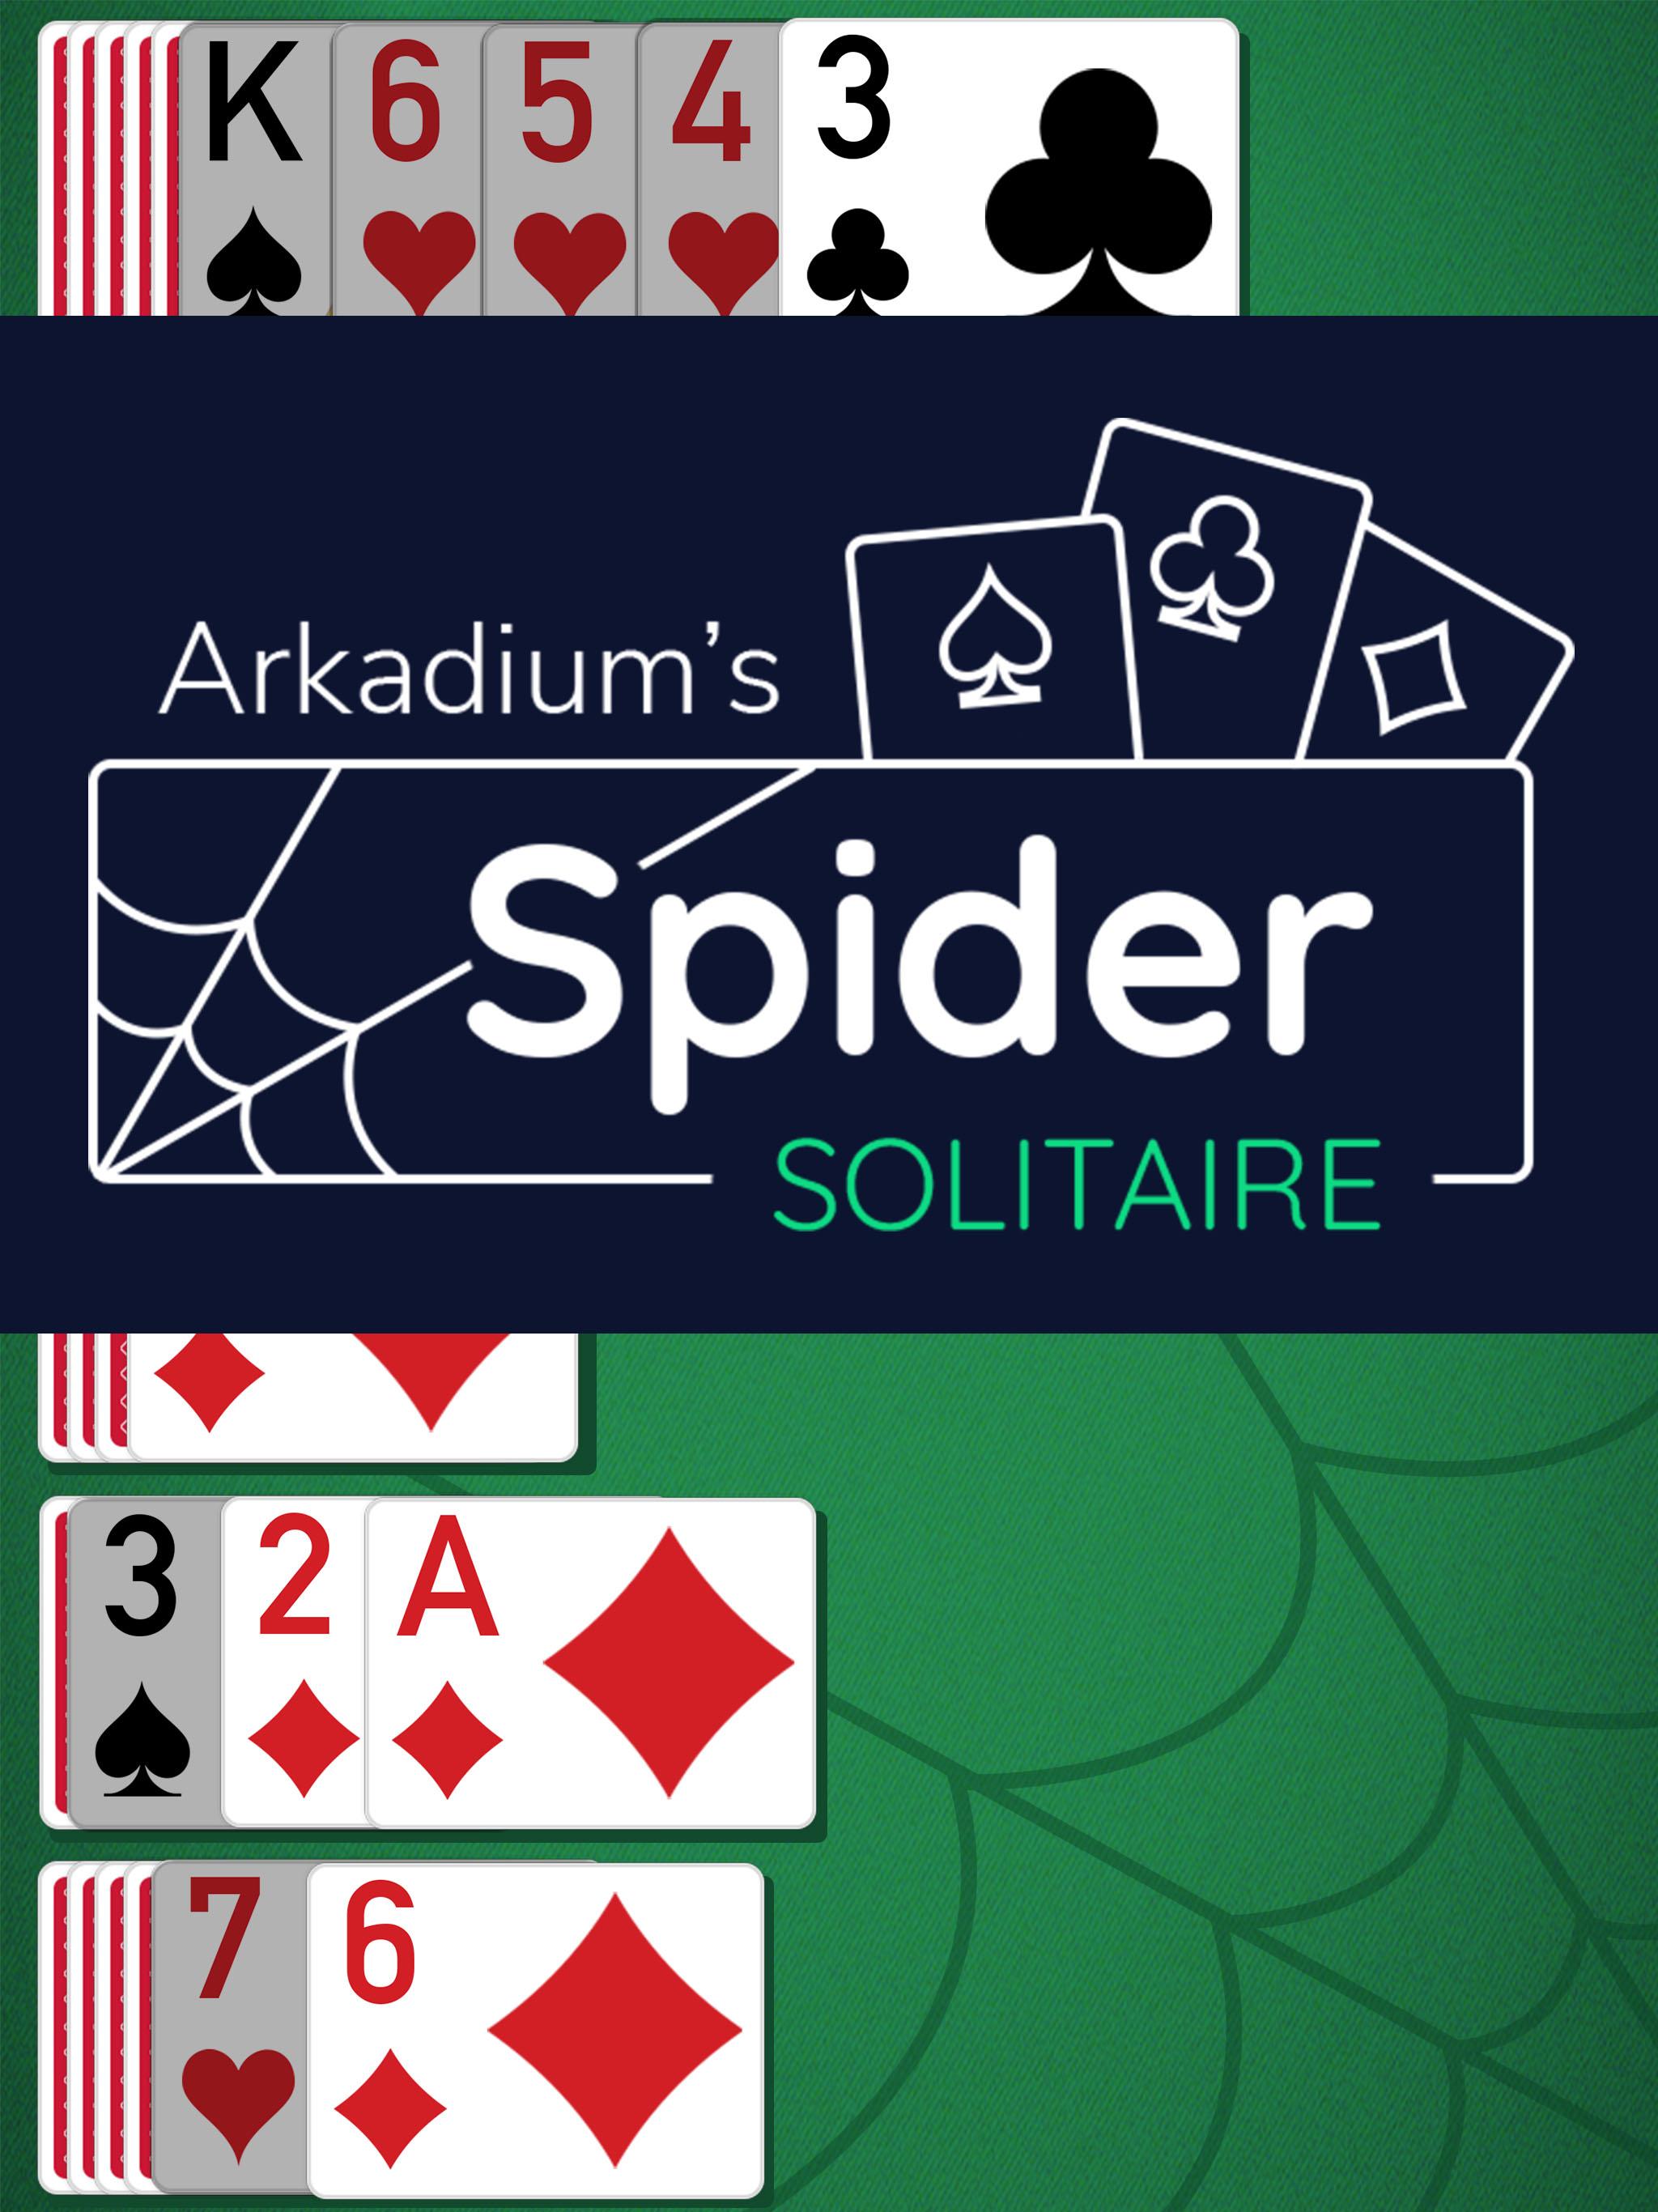 Spider Solitaire de Arkadium - Juegos de solitario for Android - APK  Download